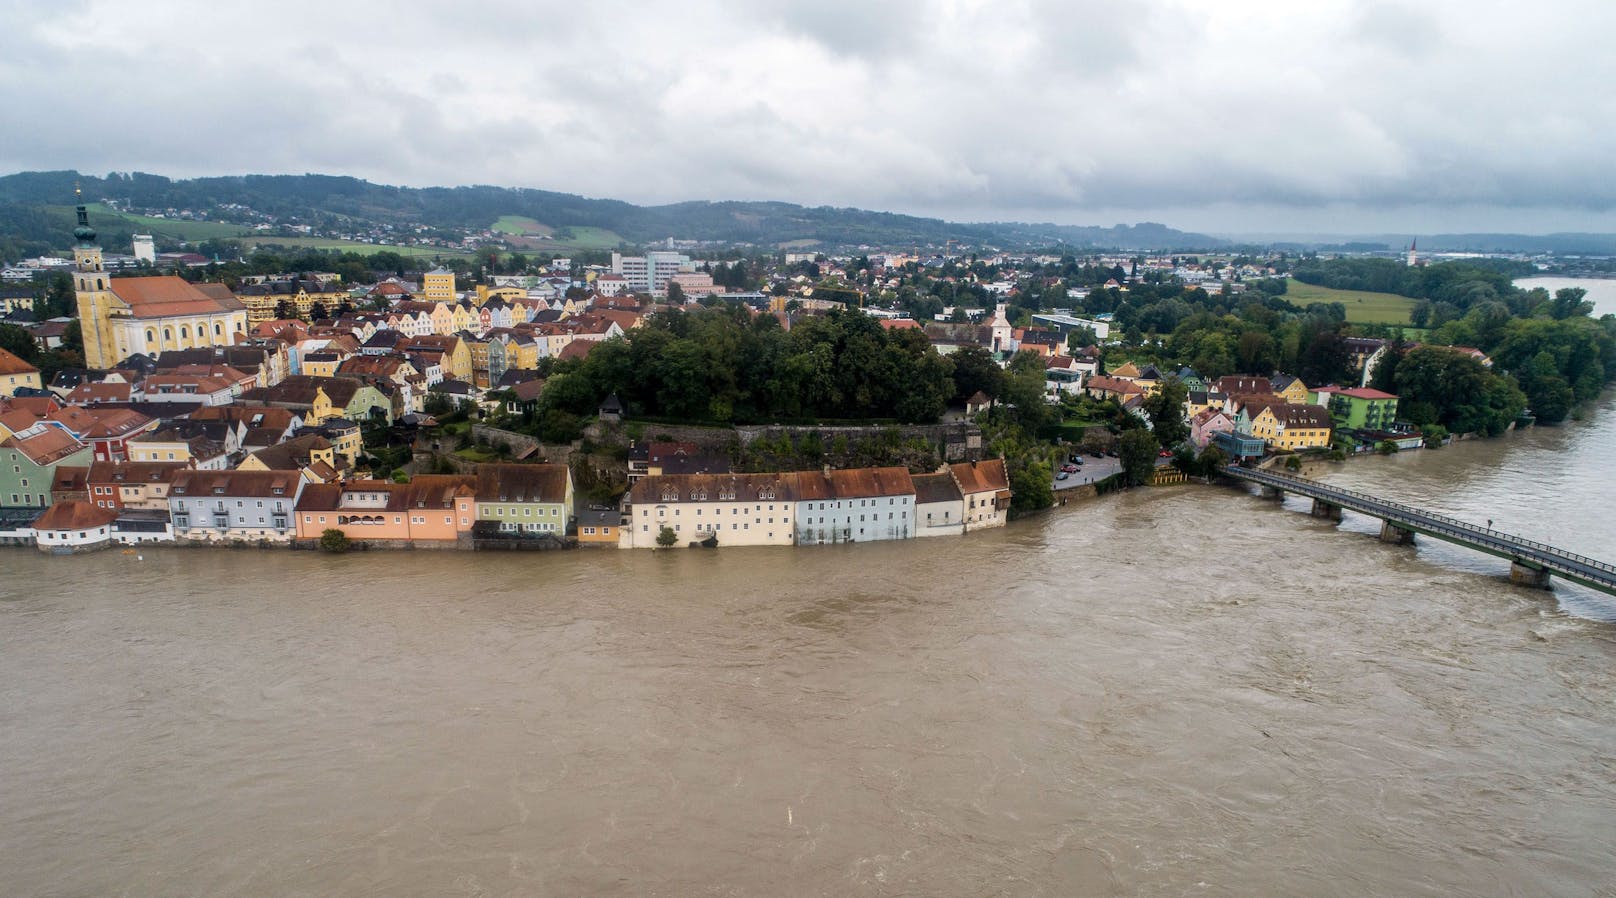 Fotos zeigen, wie dramatisch hoch Pegel der Flüsse sind